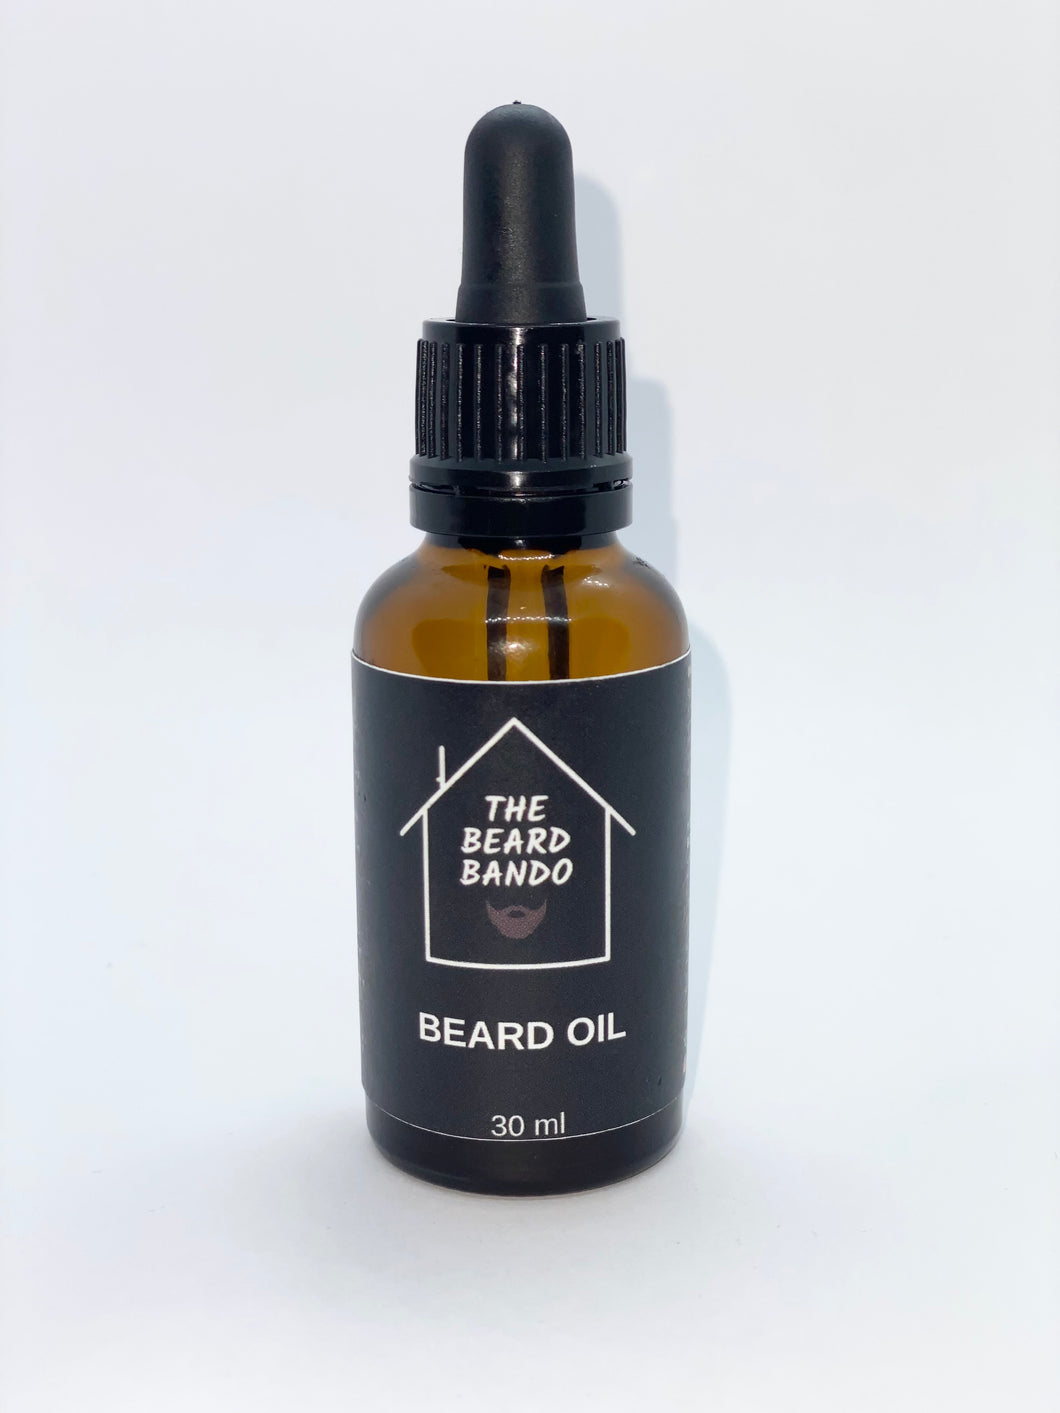 Bando Beard Oil #2 by The Beard Bando